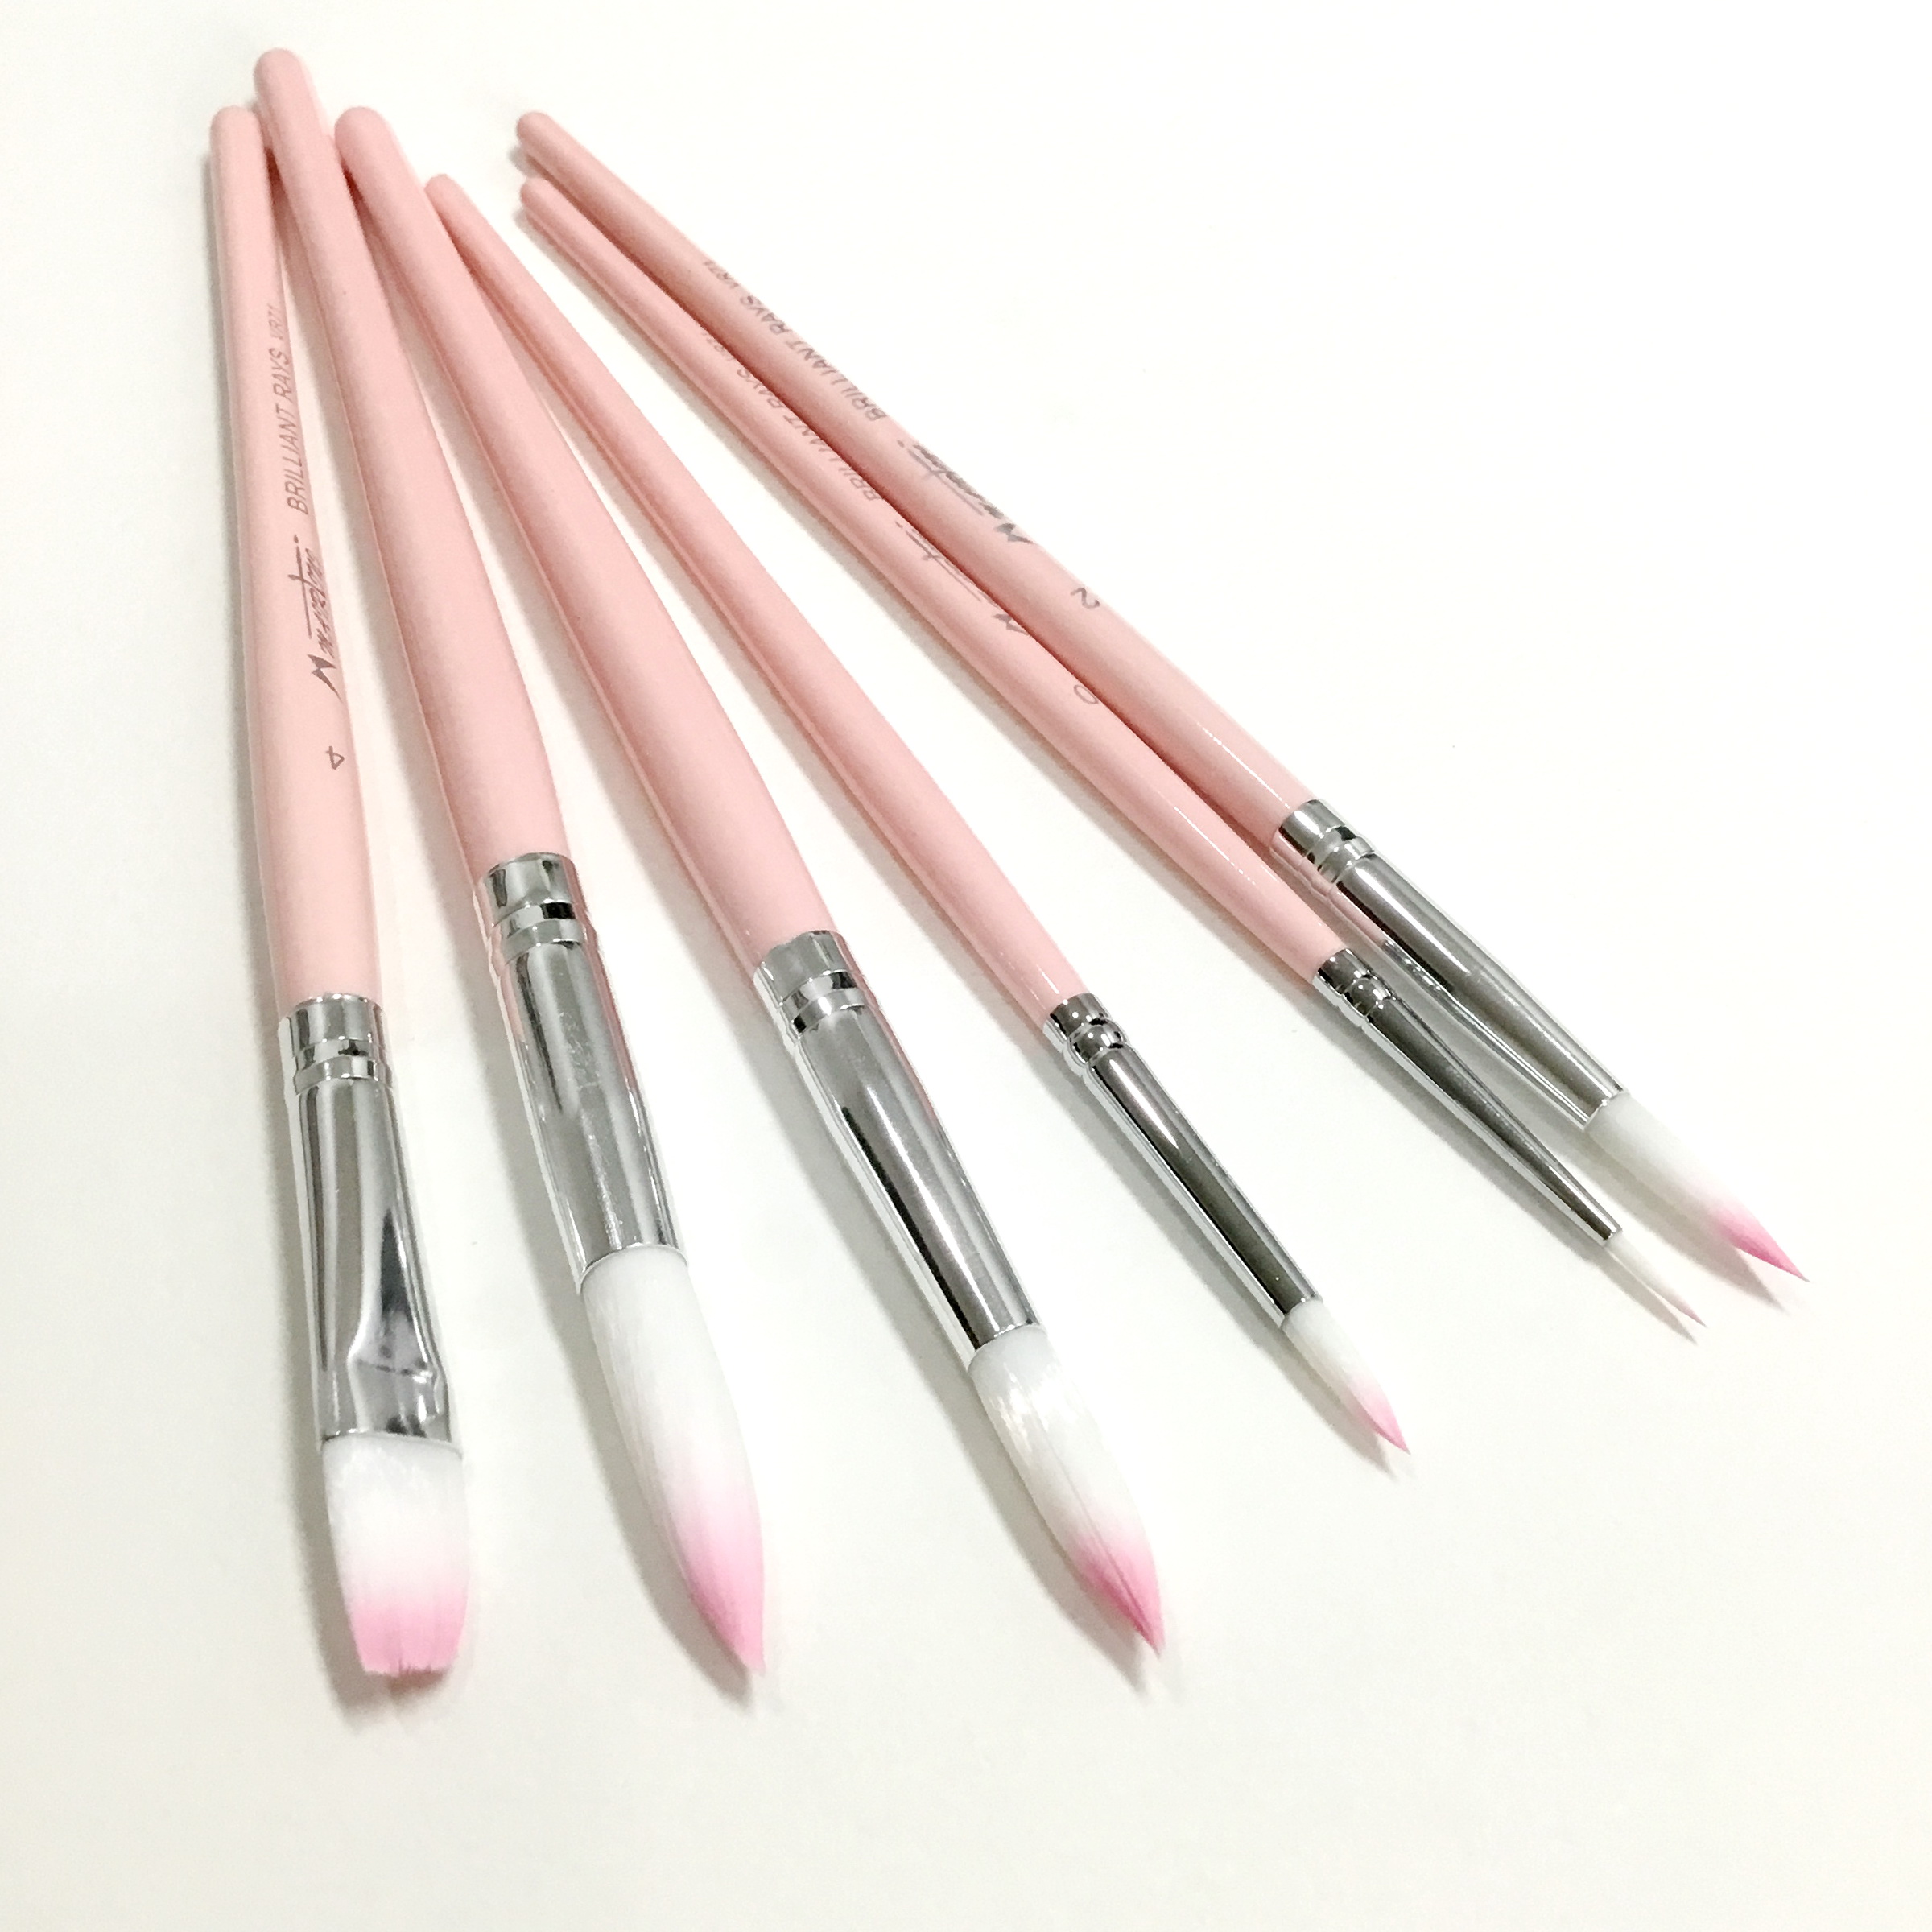 Mairtini Pink Paint Brushes 